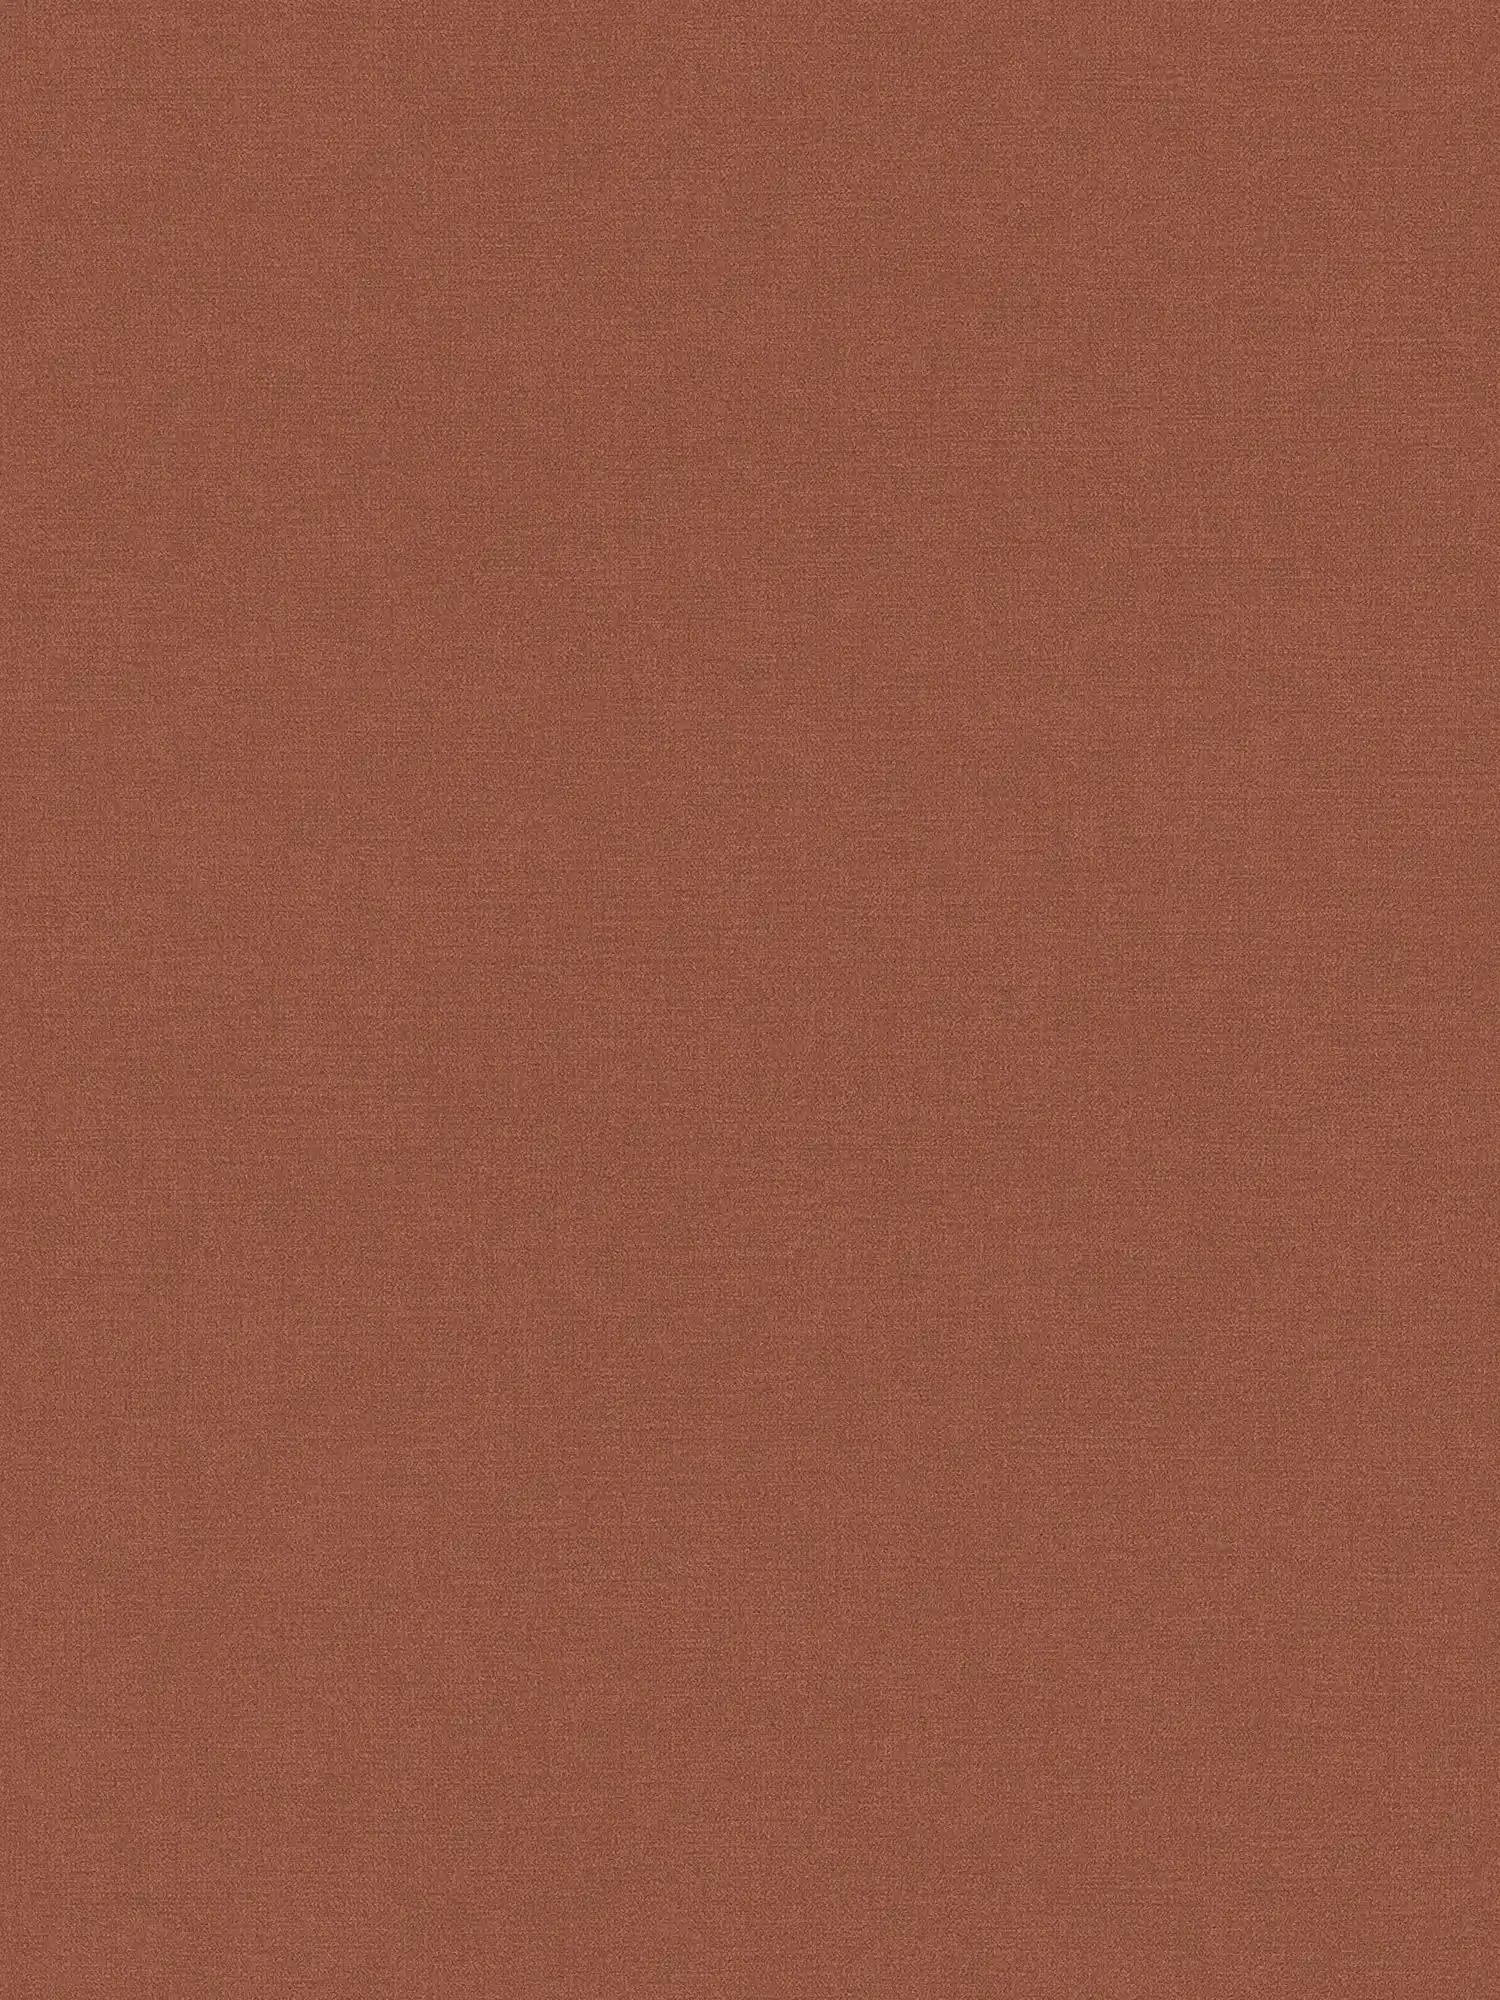 Papel pintado unitario en tonos oscuros - marrón rojizo
